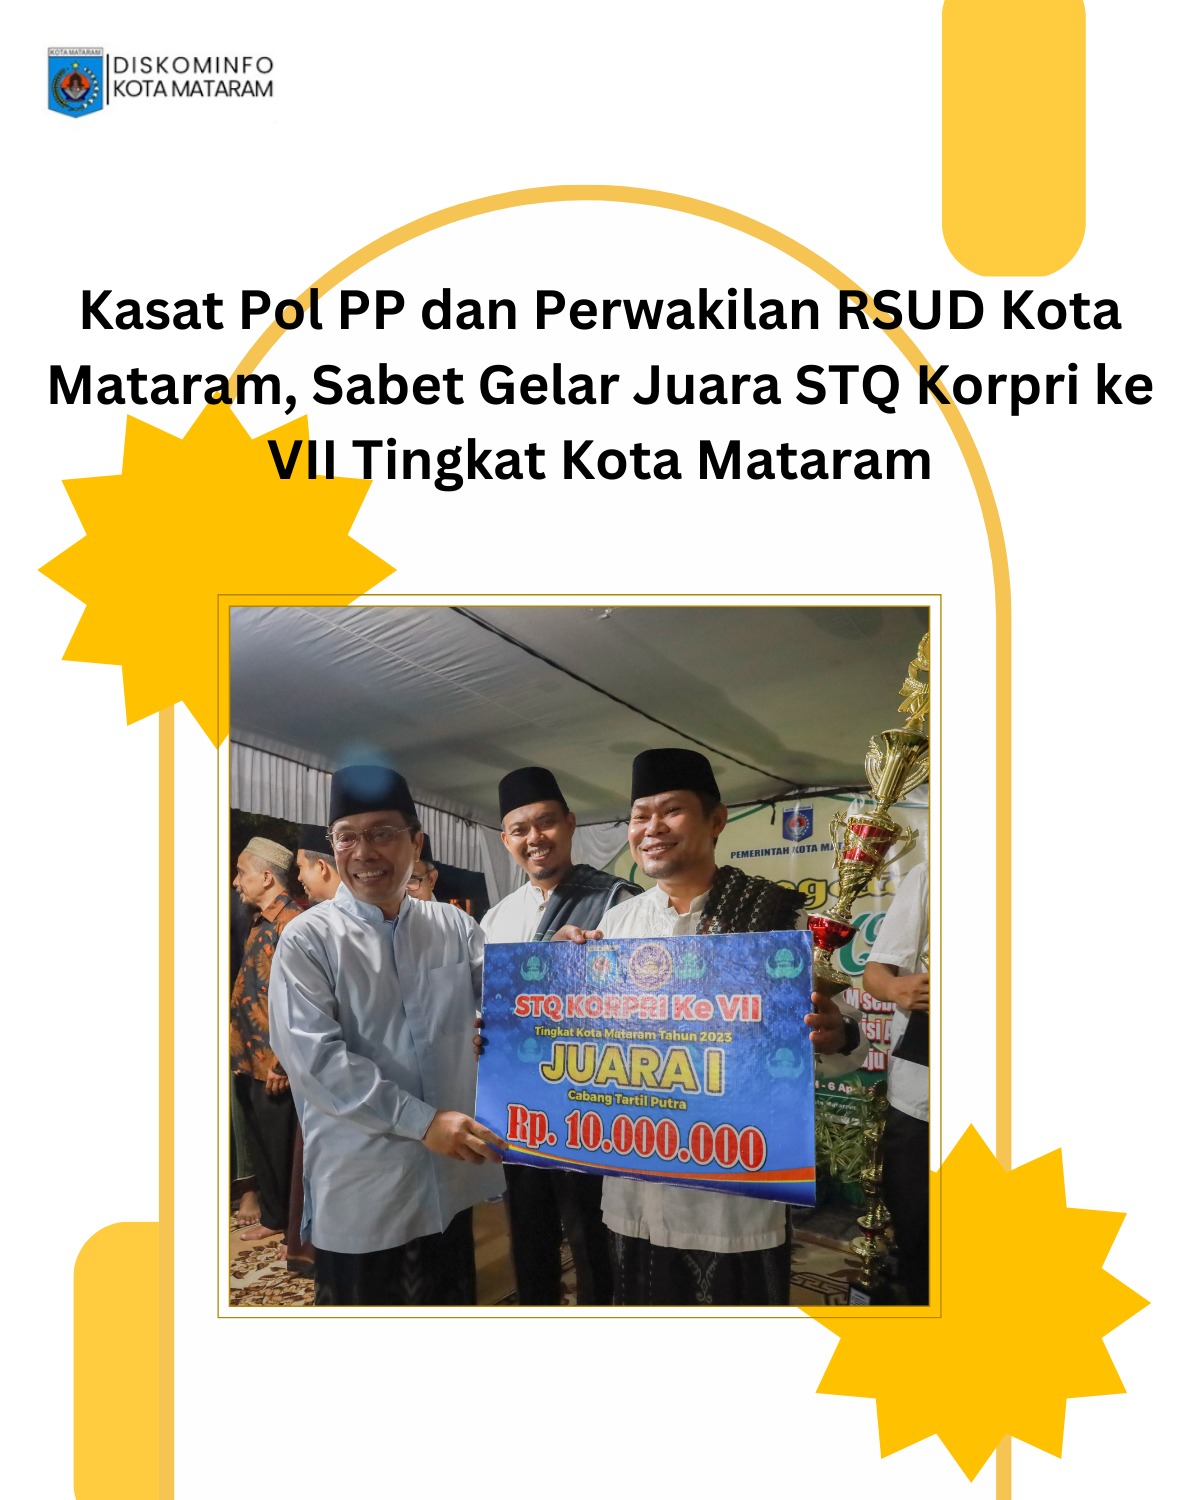 Kasat Pol PP dan Perwakilan RSUD Kota Mataram Sabet Gelar STQ Korpri ke VII Kota Mataram.